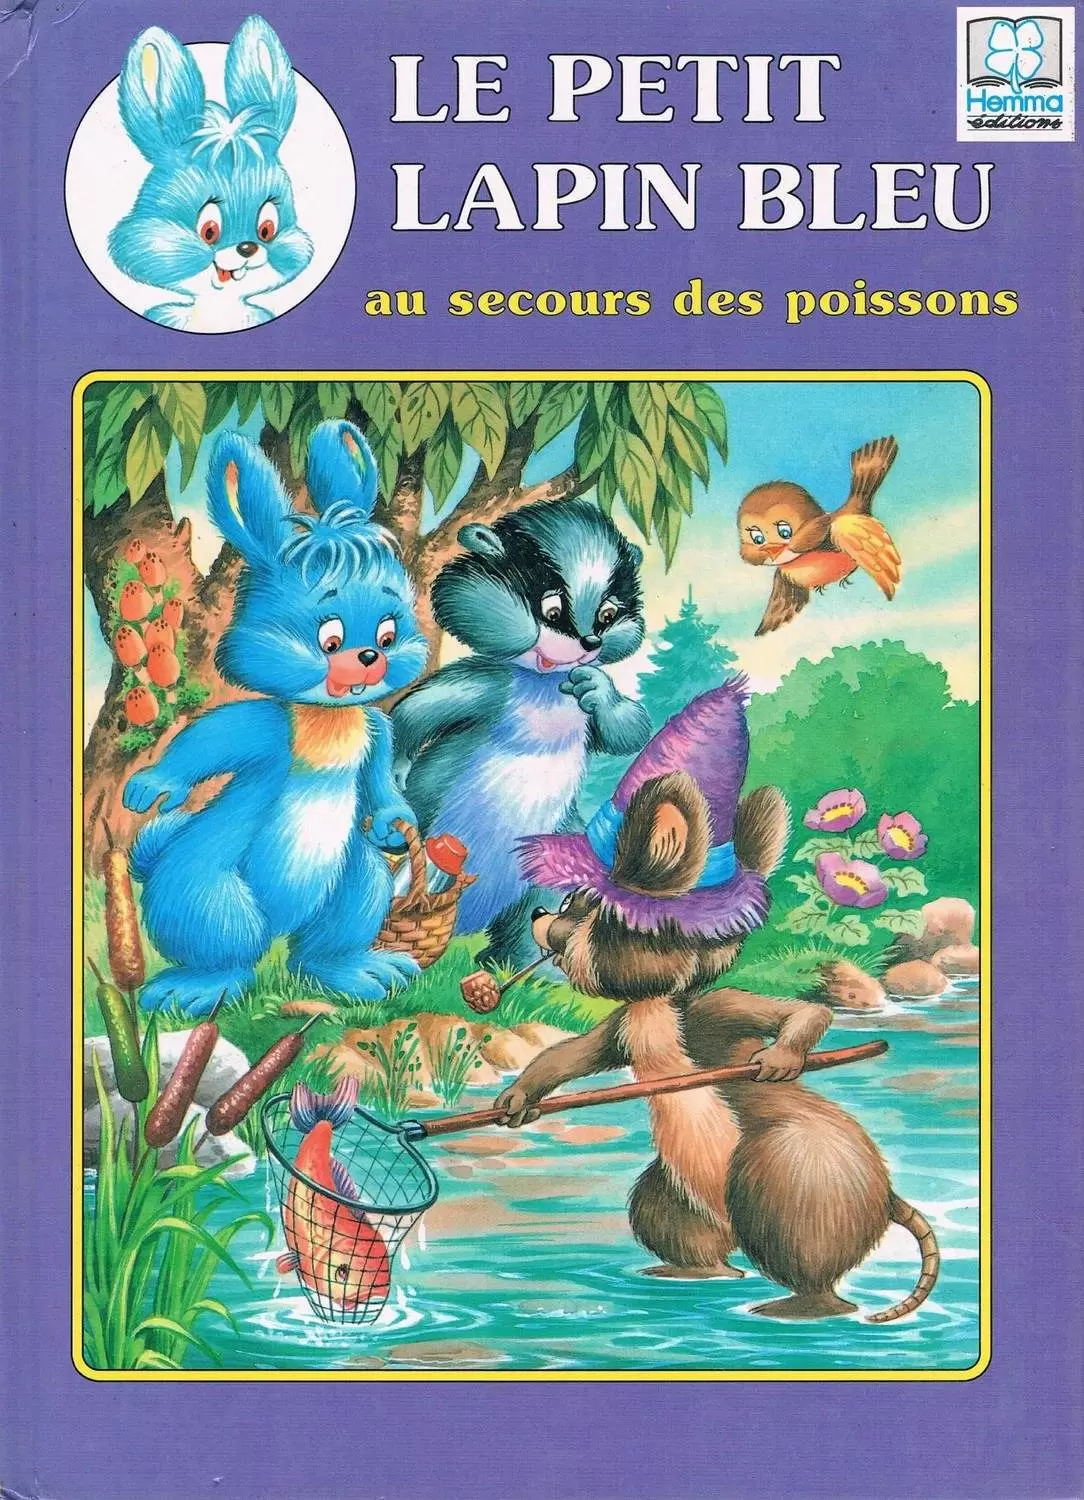 Le Petit Lapin Bleu - Le petit lapin bleu au secours des poissons